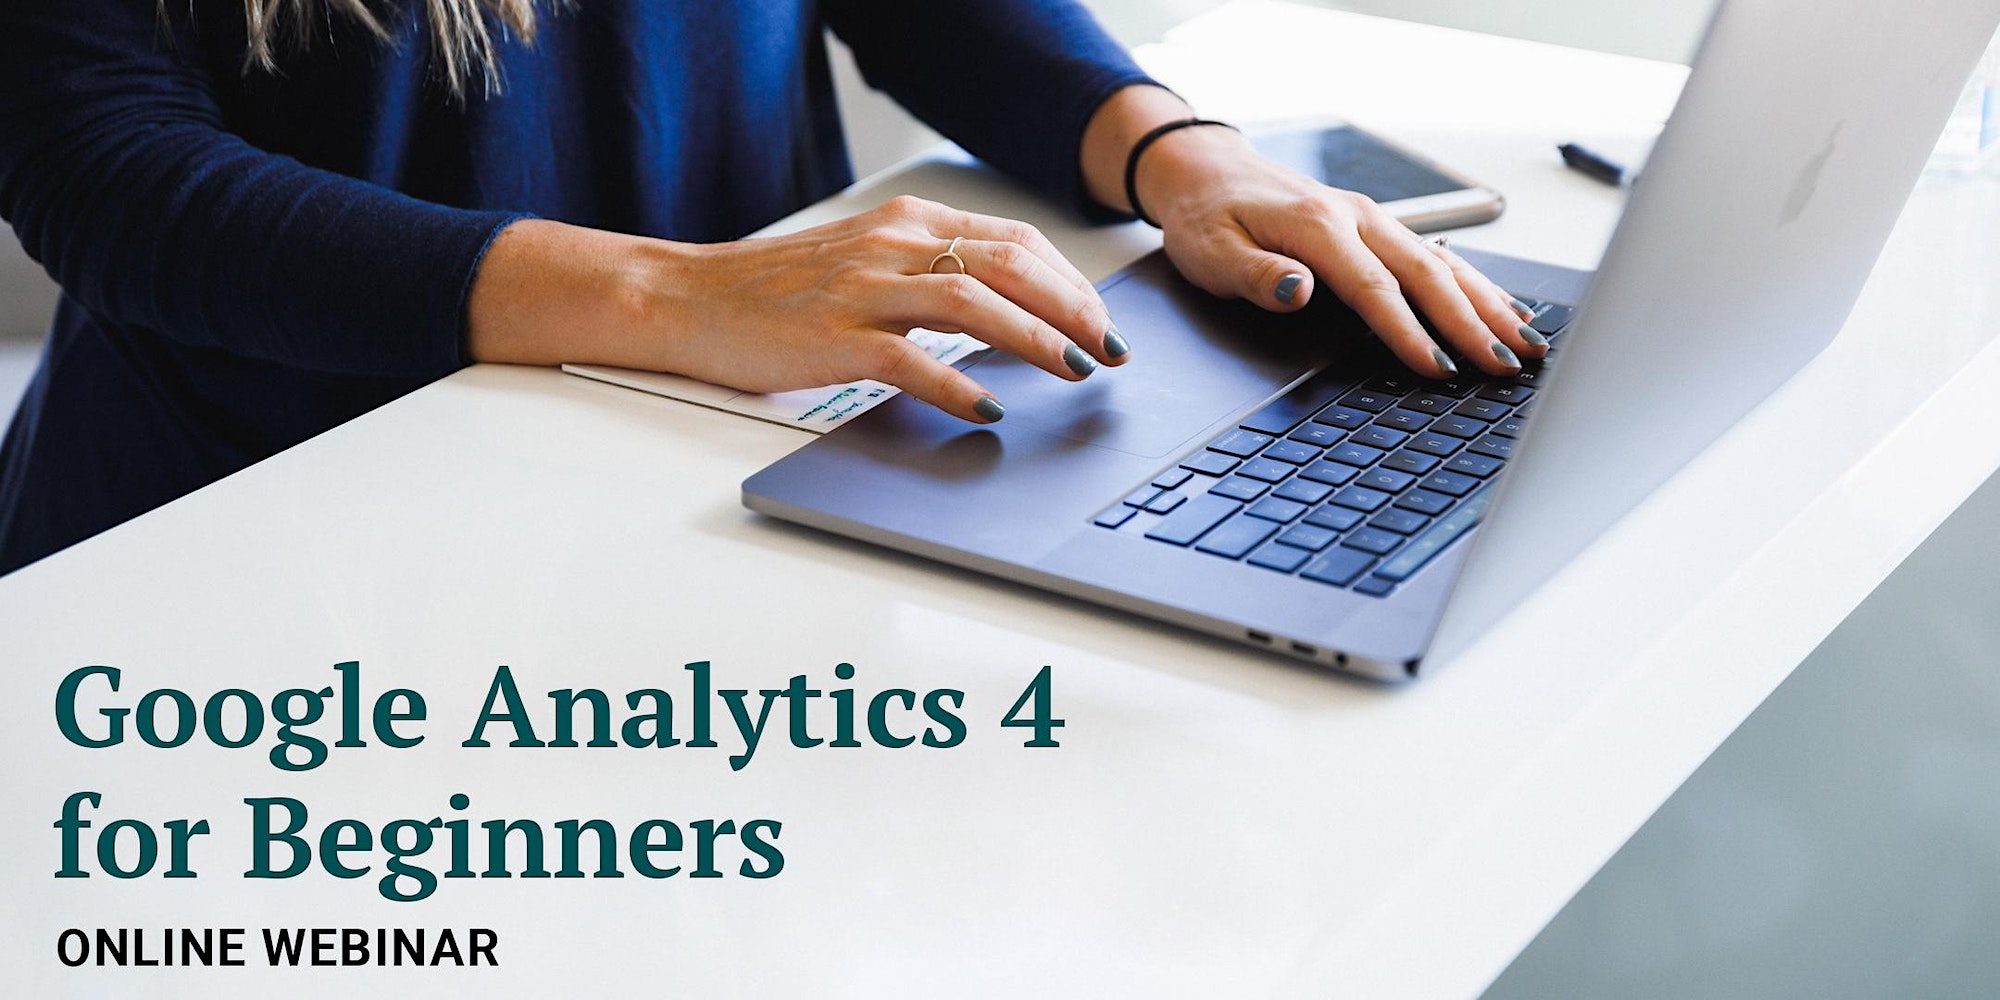 Google analytics 4 for beginners online webinar